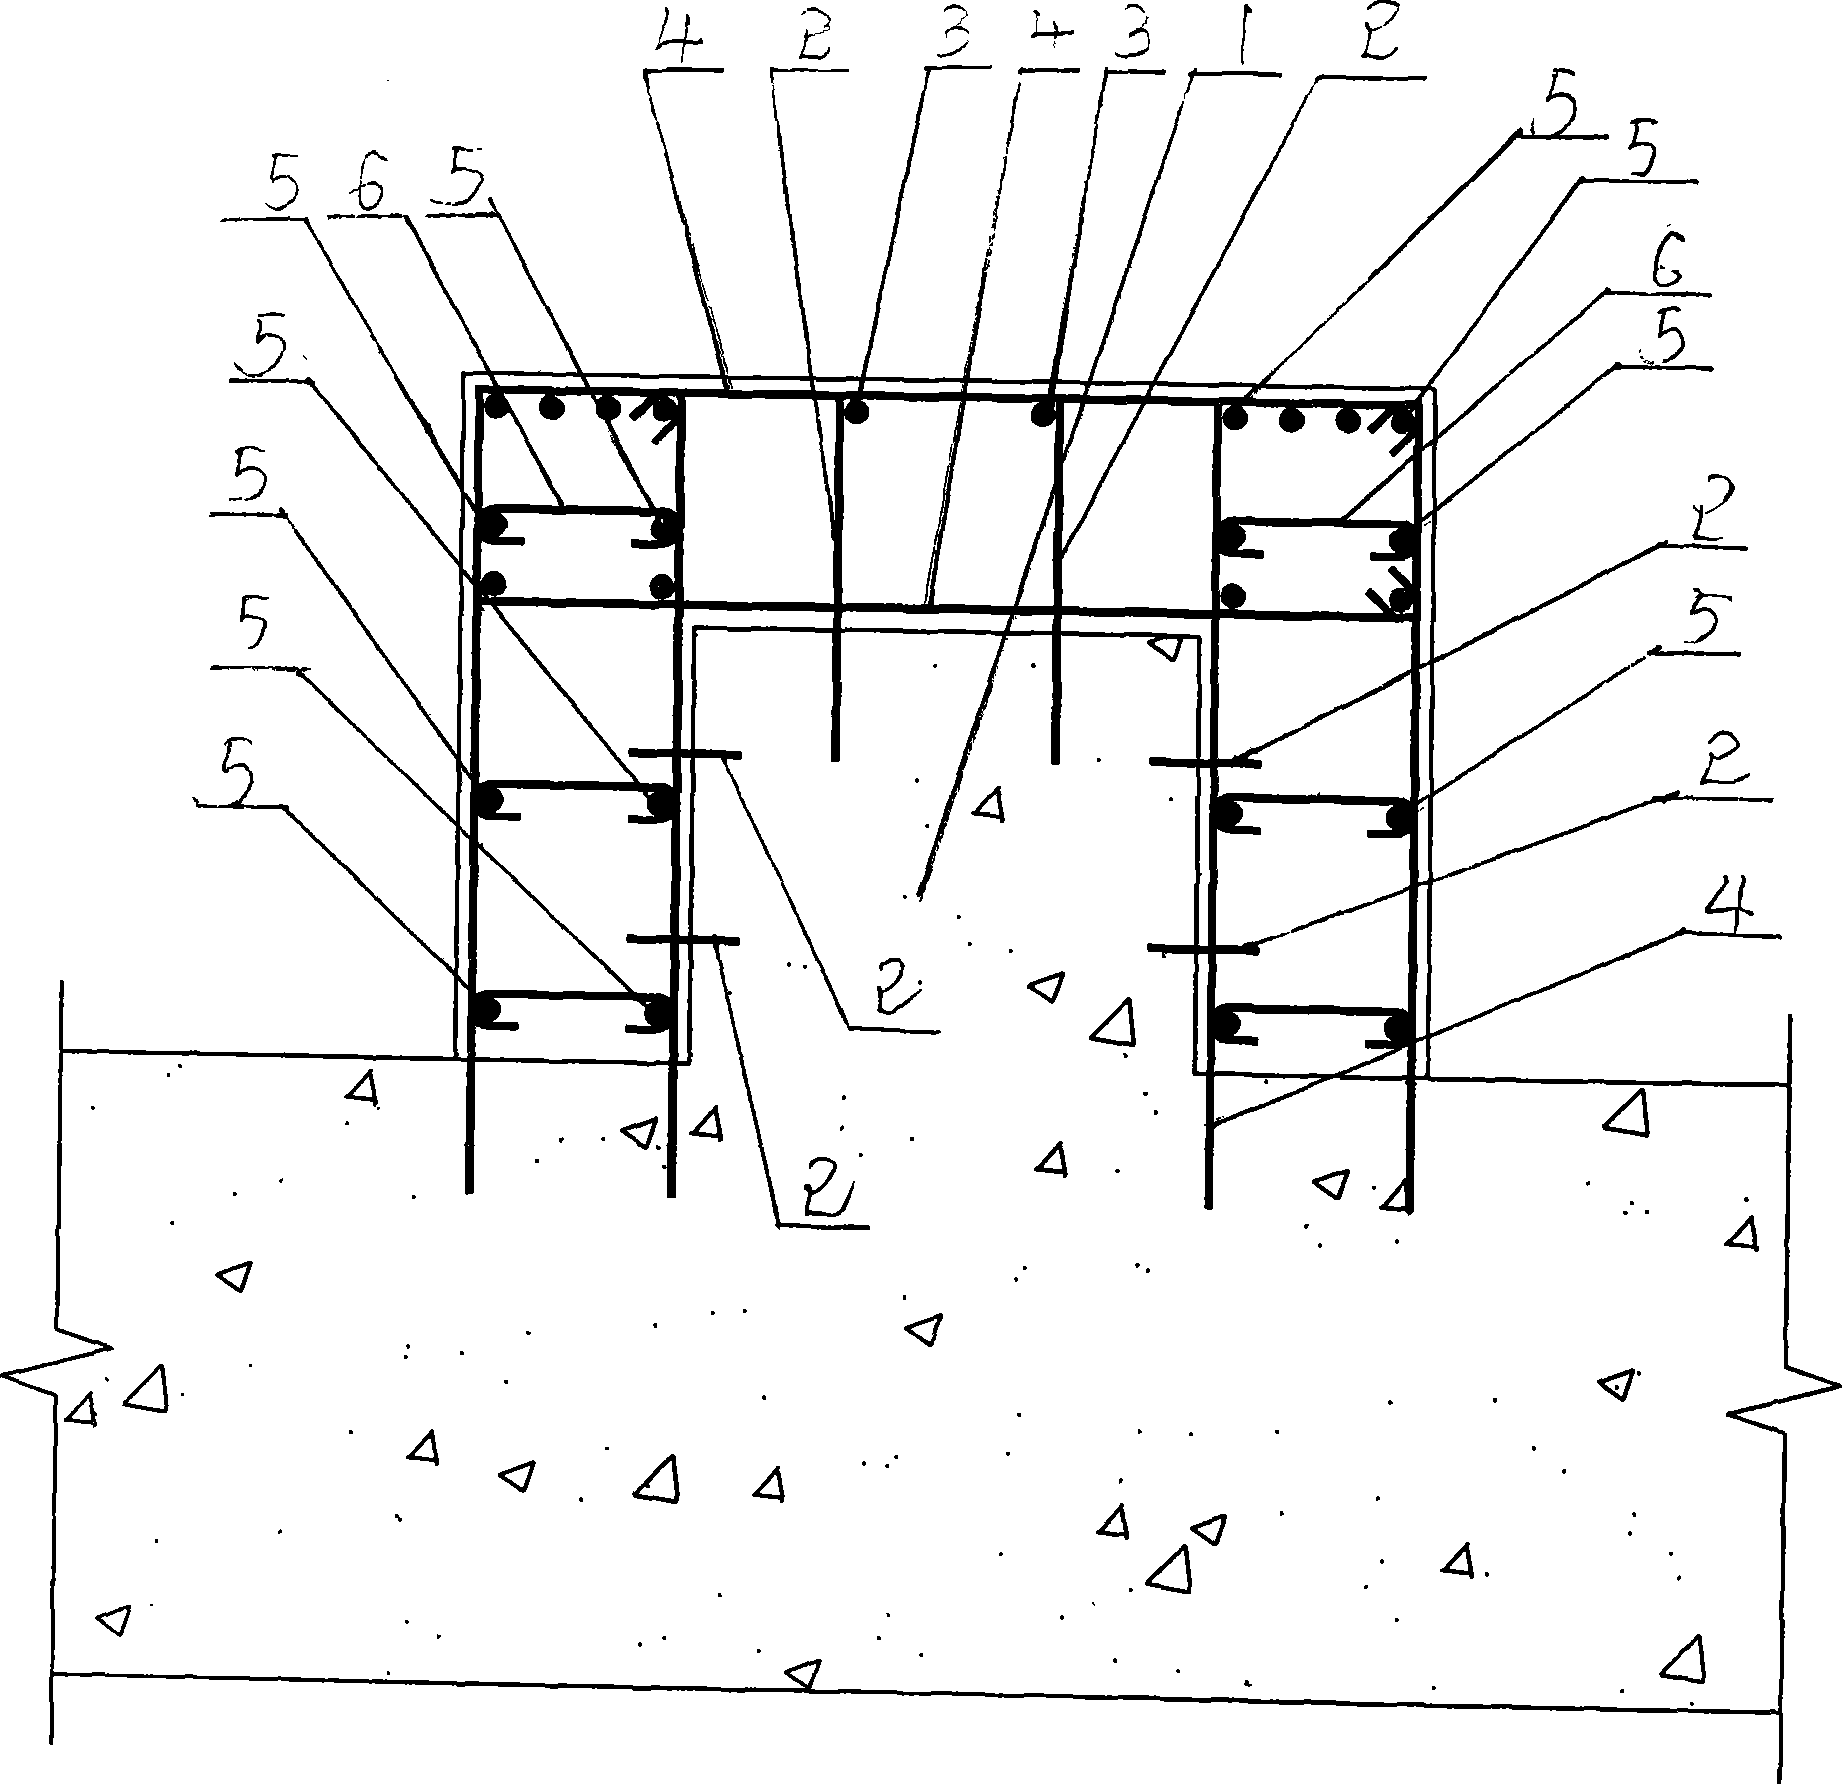 Construction method for reinforcing grade beam